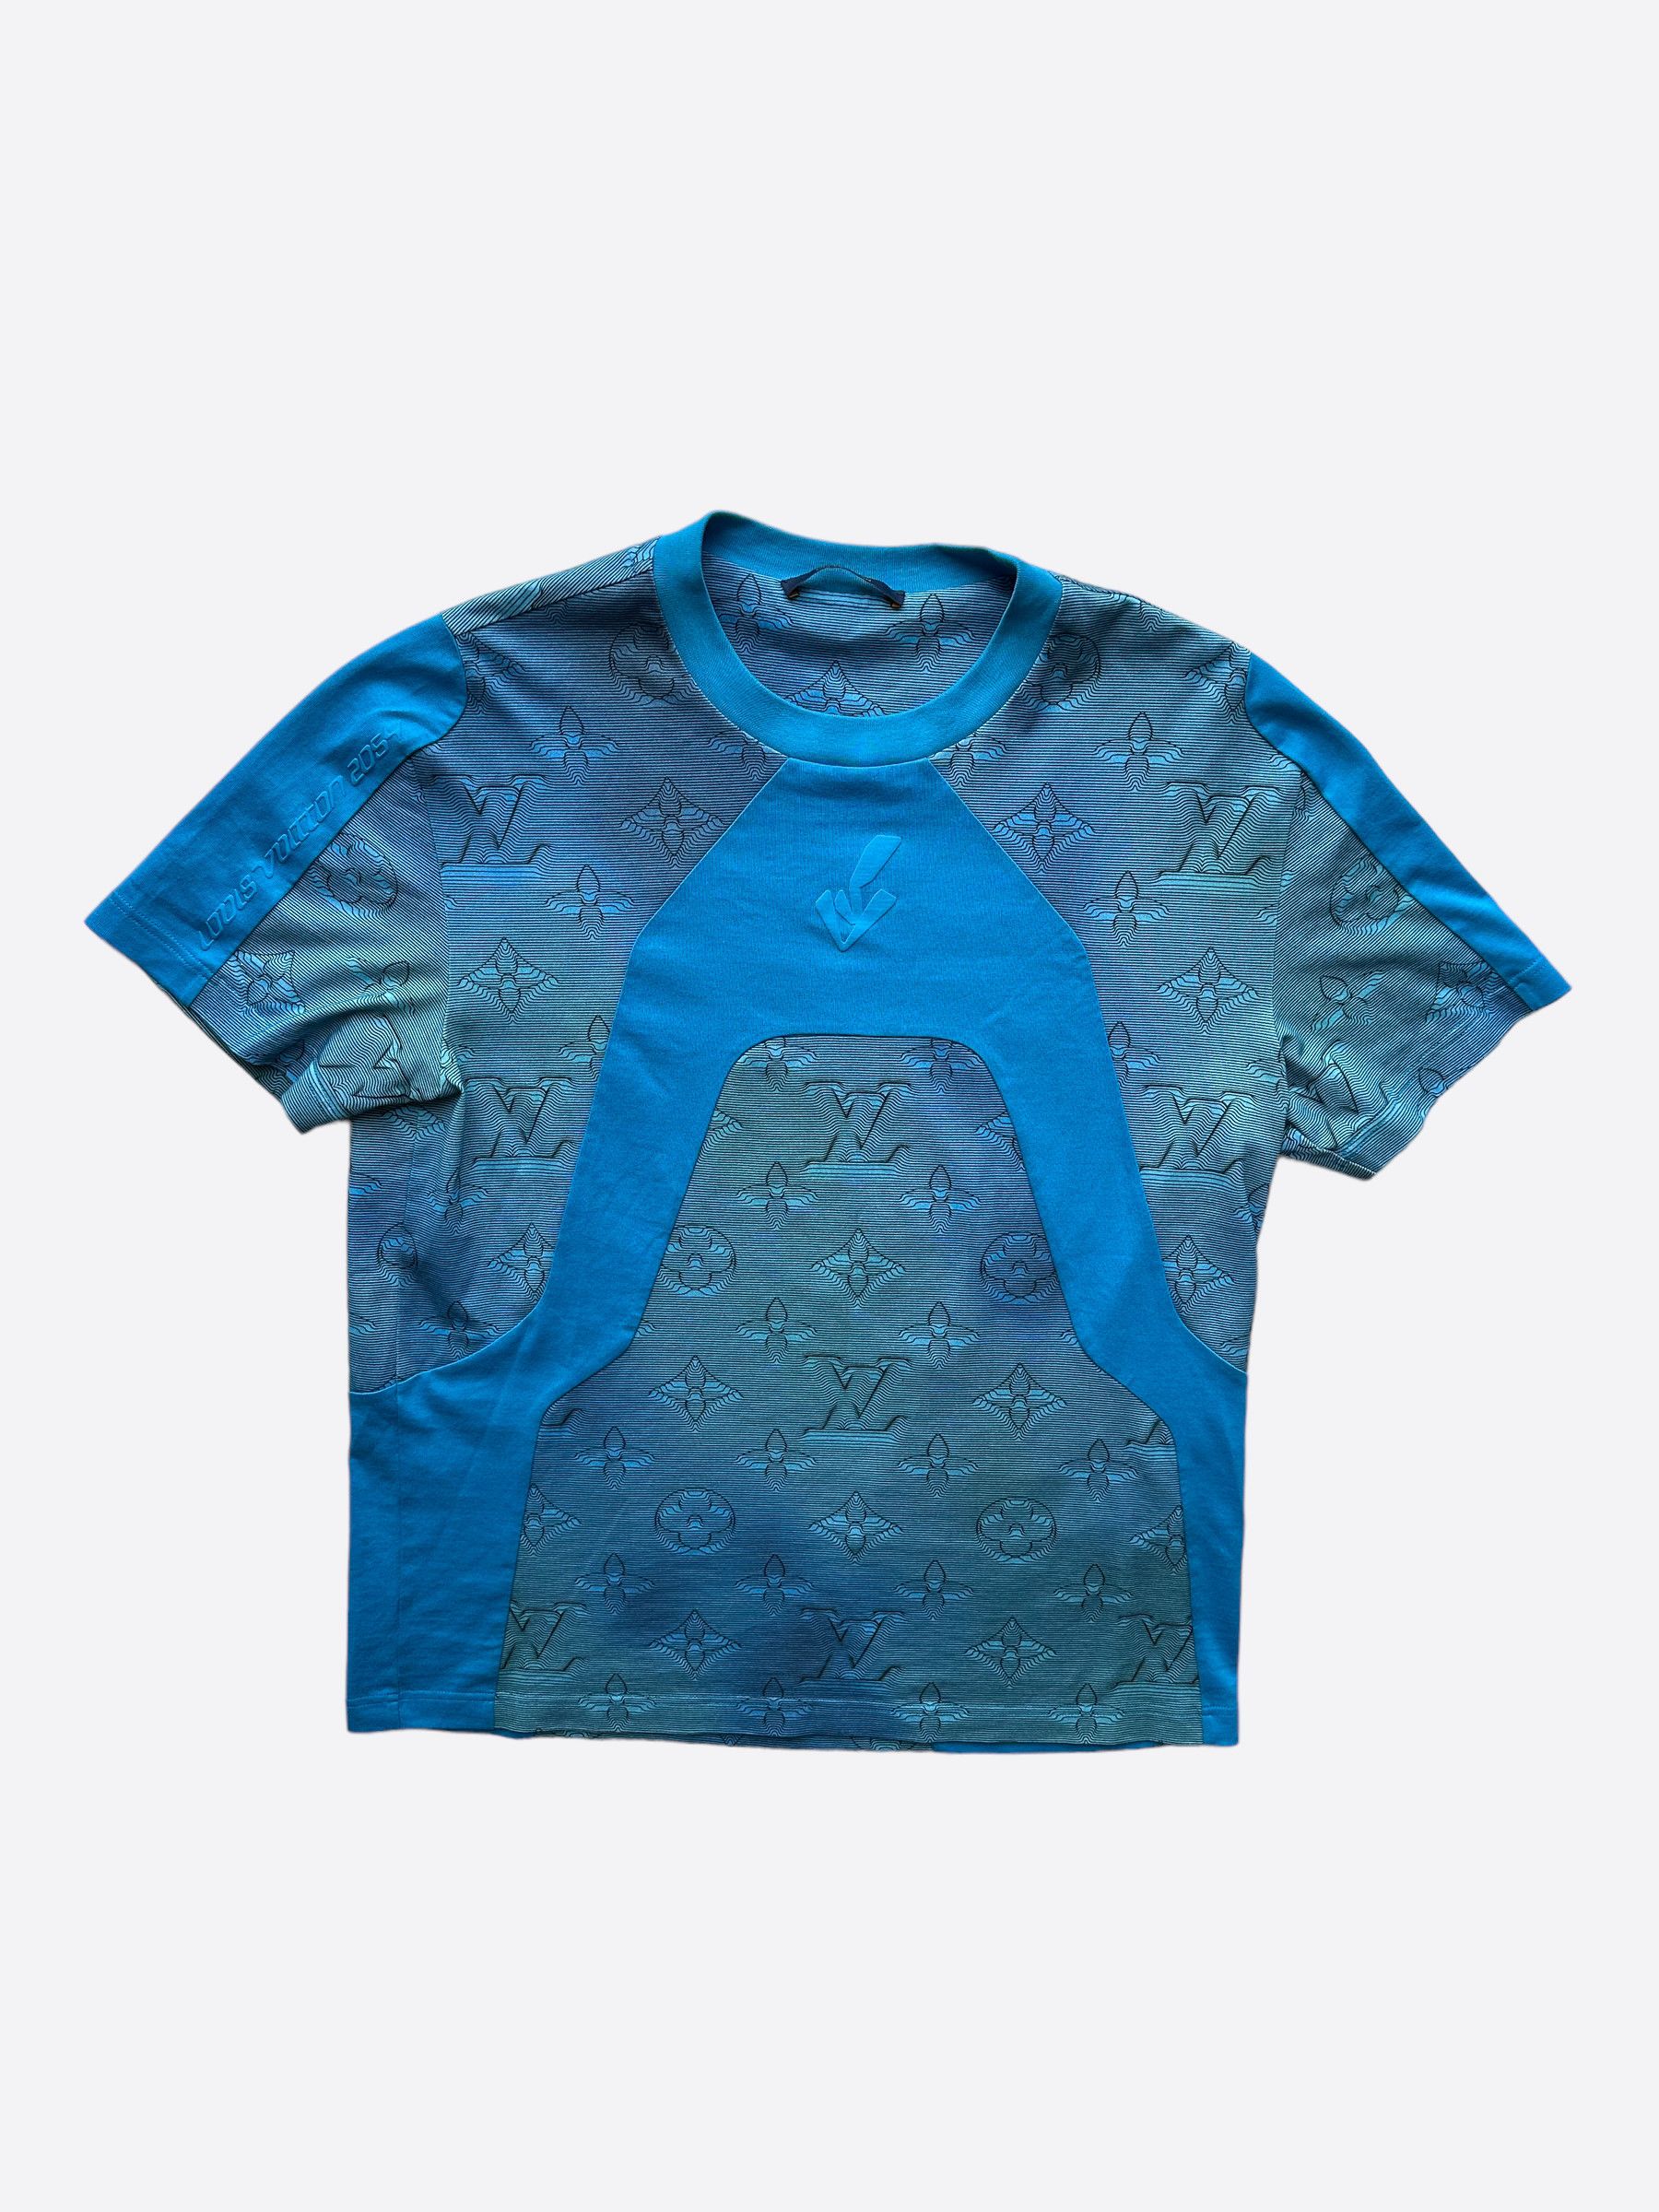 Louis Vuitton 100% Cotton T-shirt Blue Black NBA Virgil Abloh Size